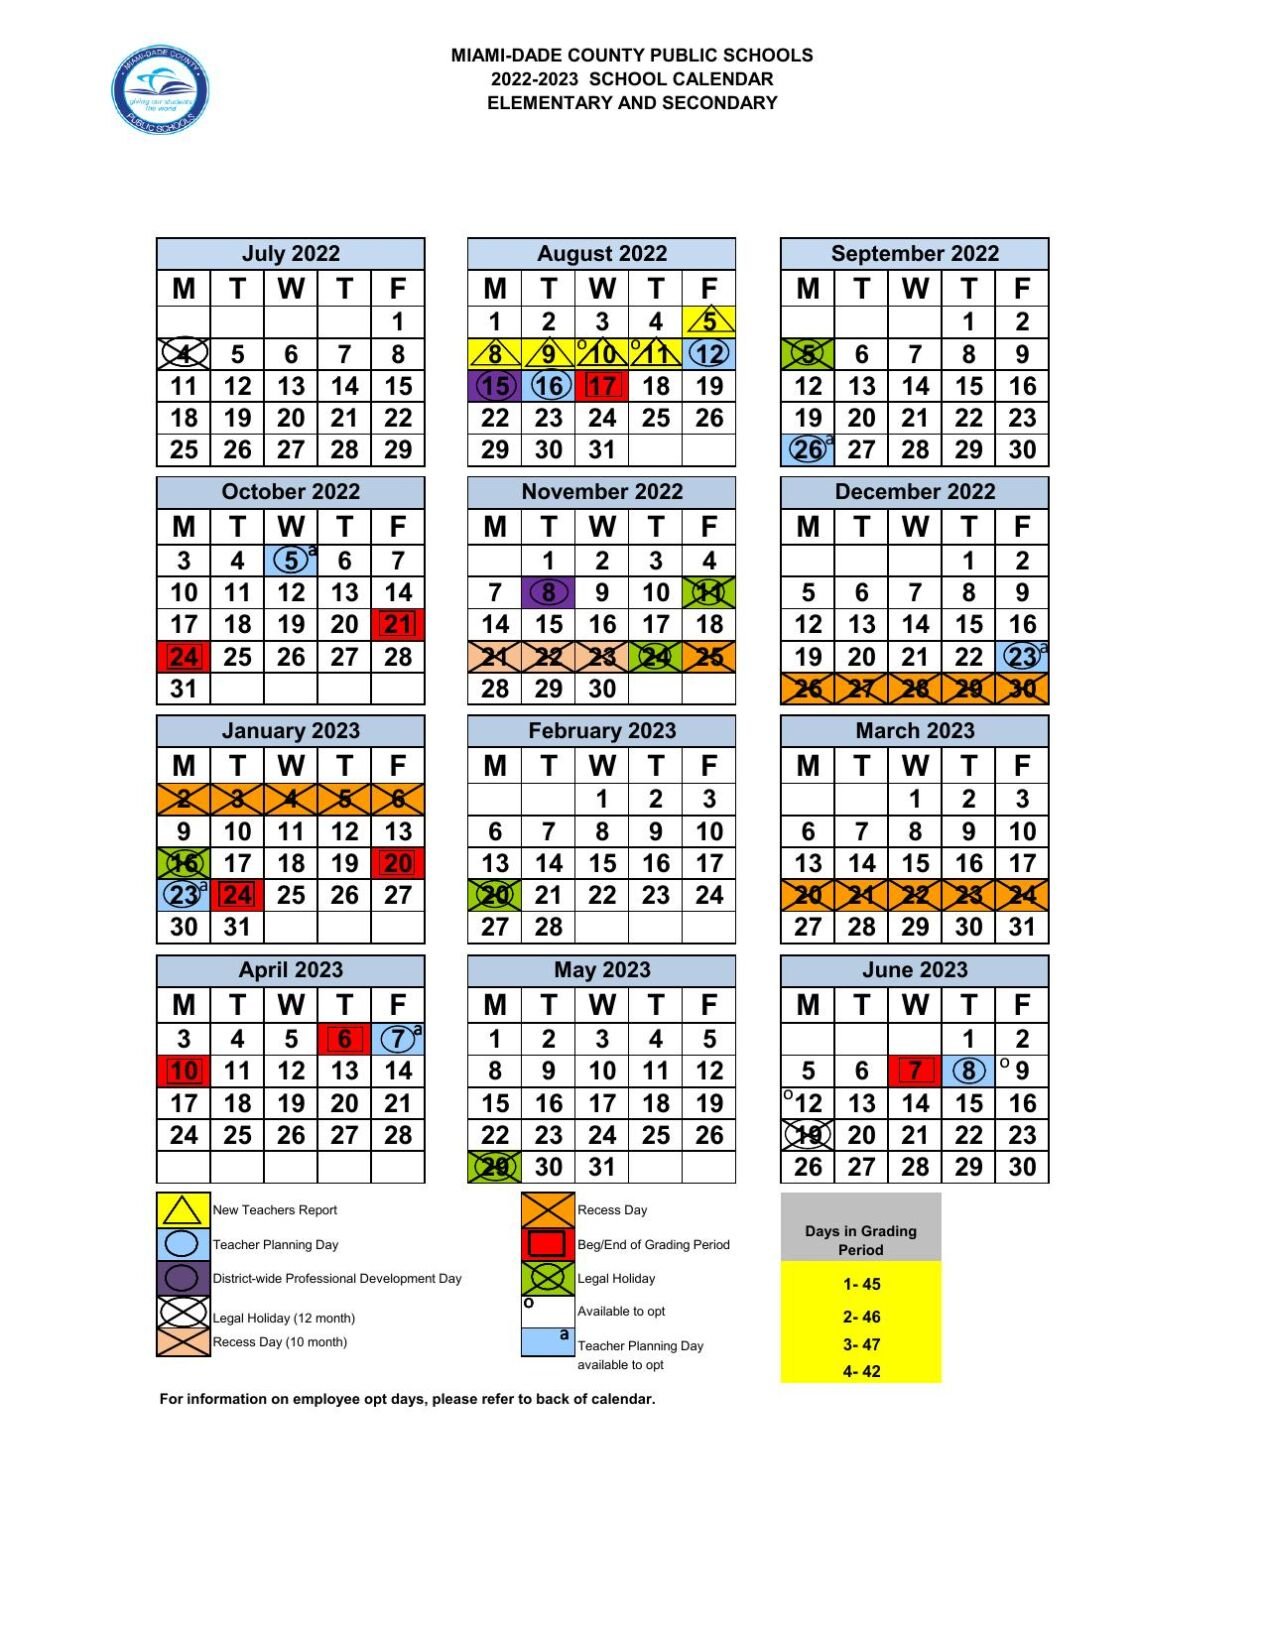 Miami Dade Public School Calendar 2023 2024 – Get Calendar 2023 Update